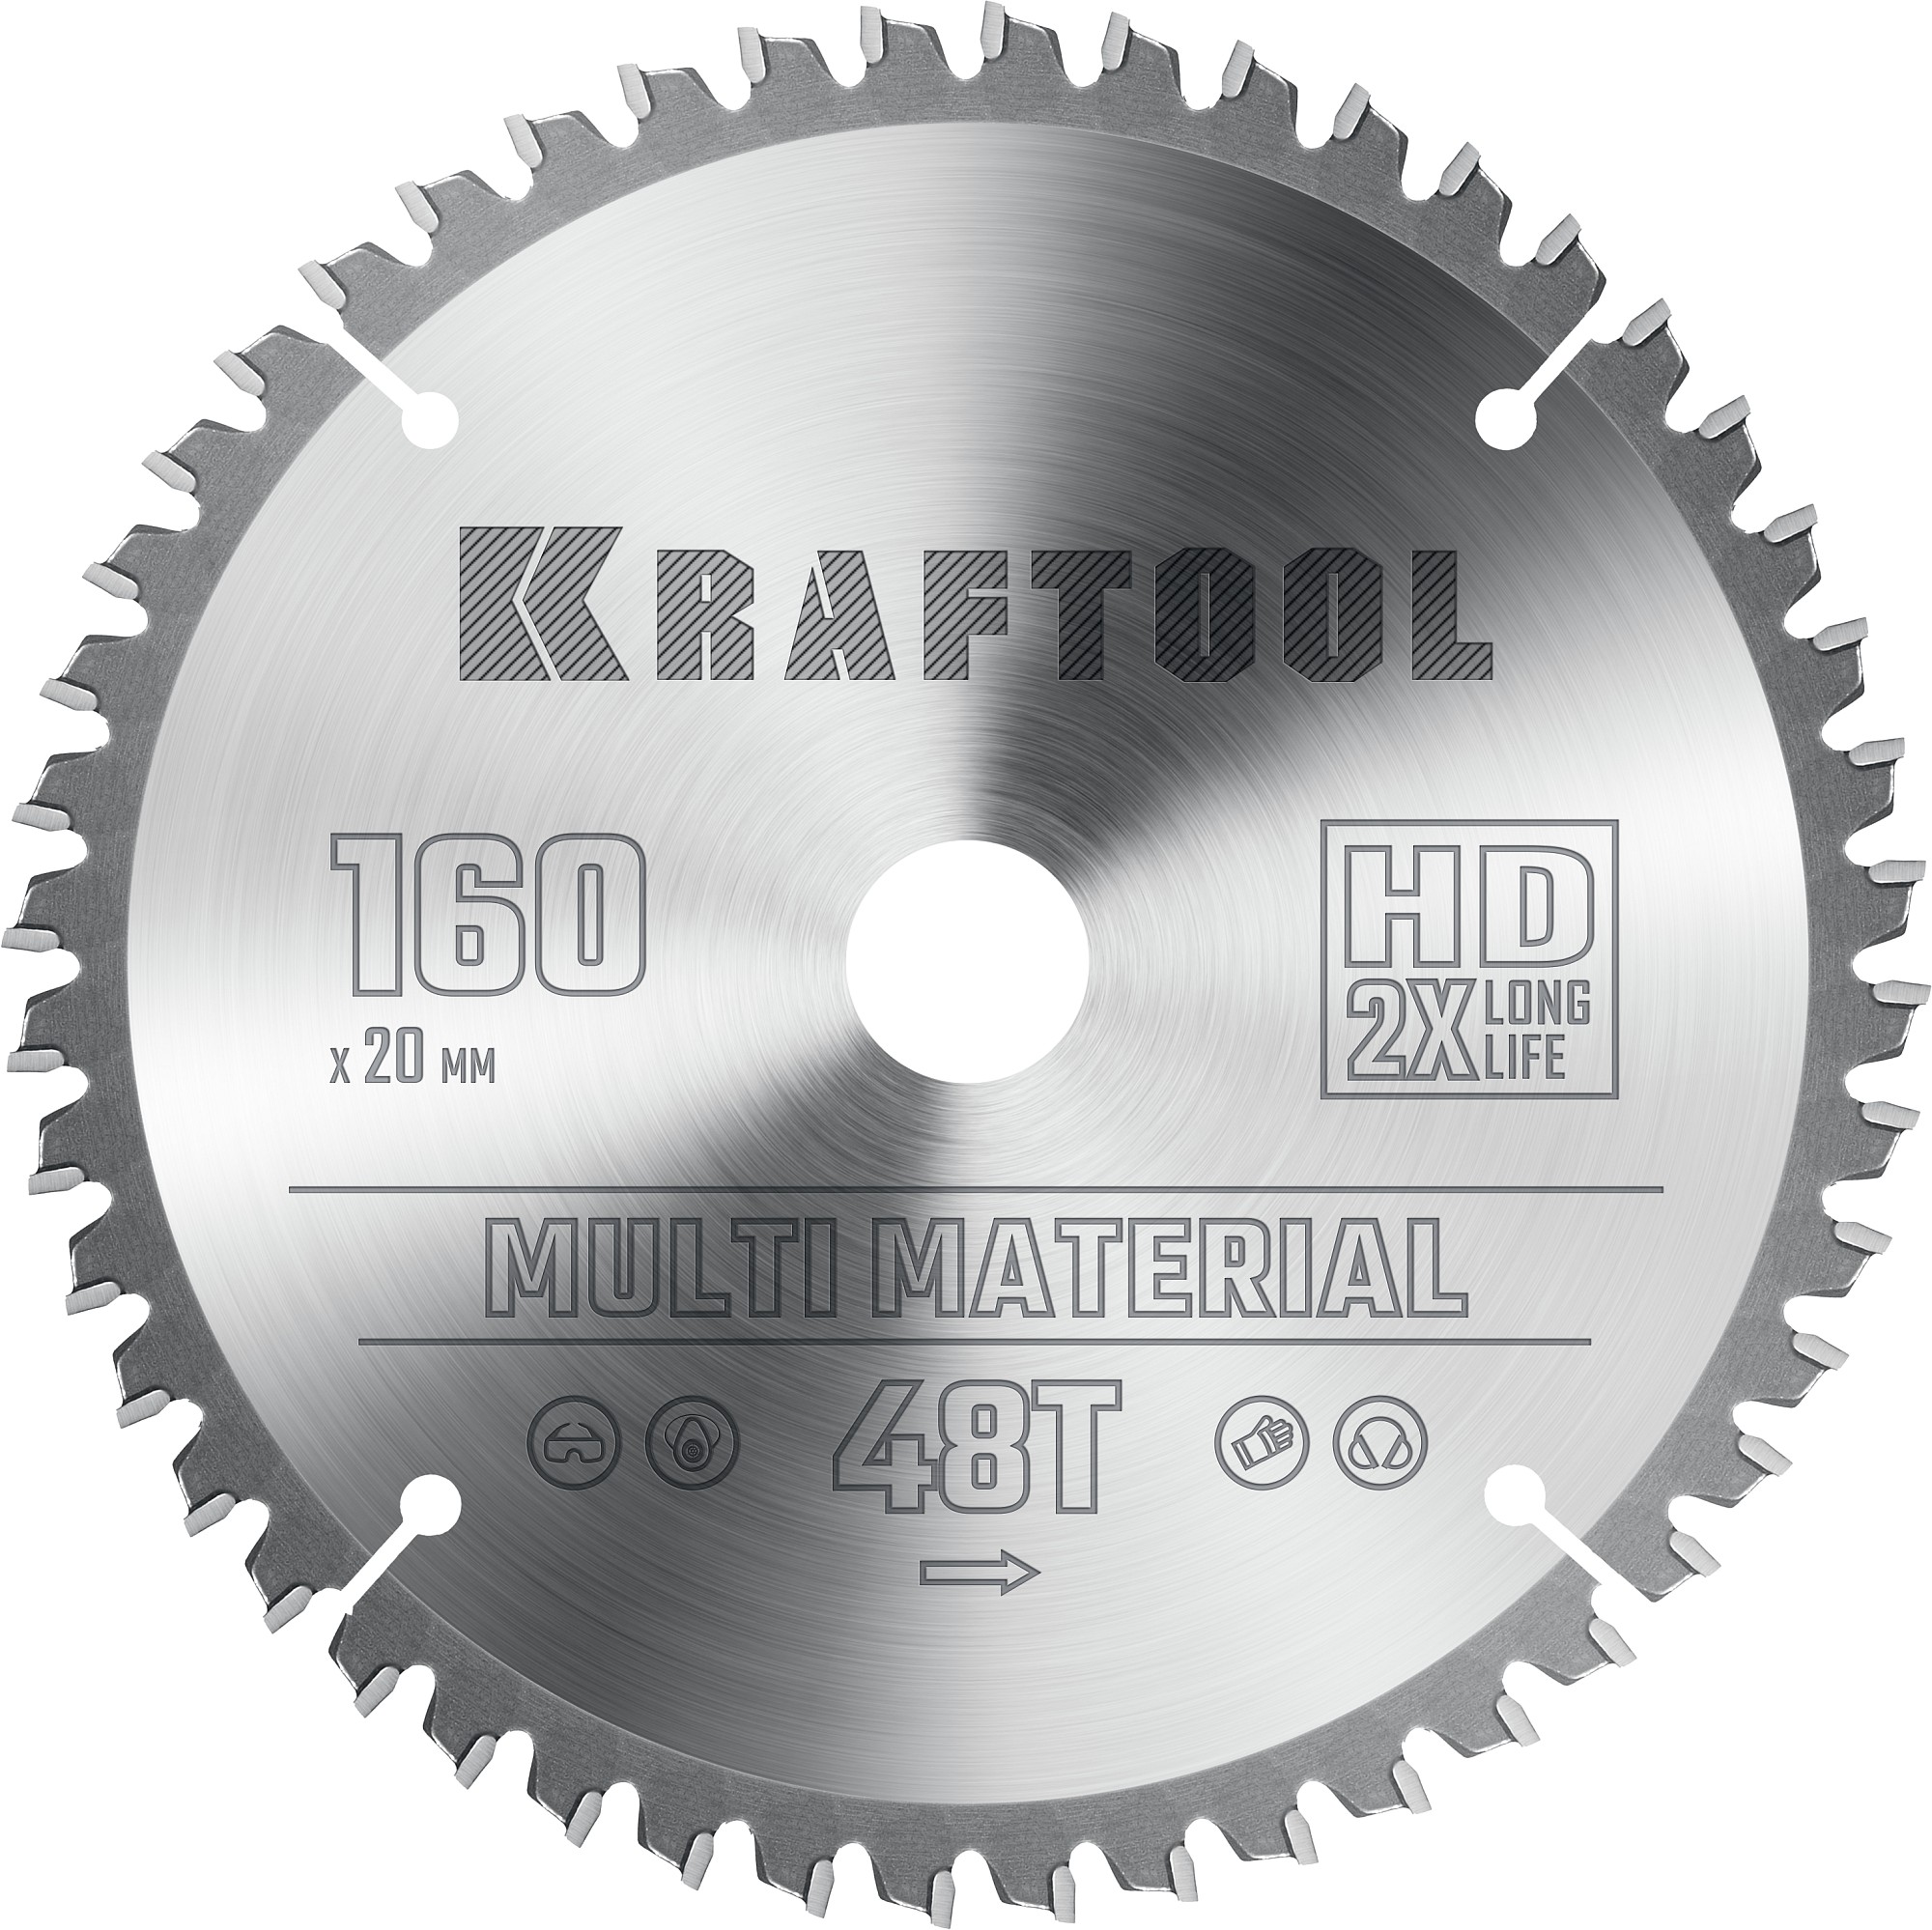 Диск пильный по алюминию Kraftool Multi Material 160х20 мм, 48Т 36953-160-20 диск пильный по алюминию kraftool multi material 216х30 мм 64т 36953 216 30